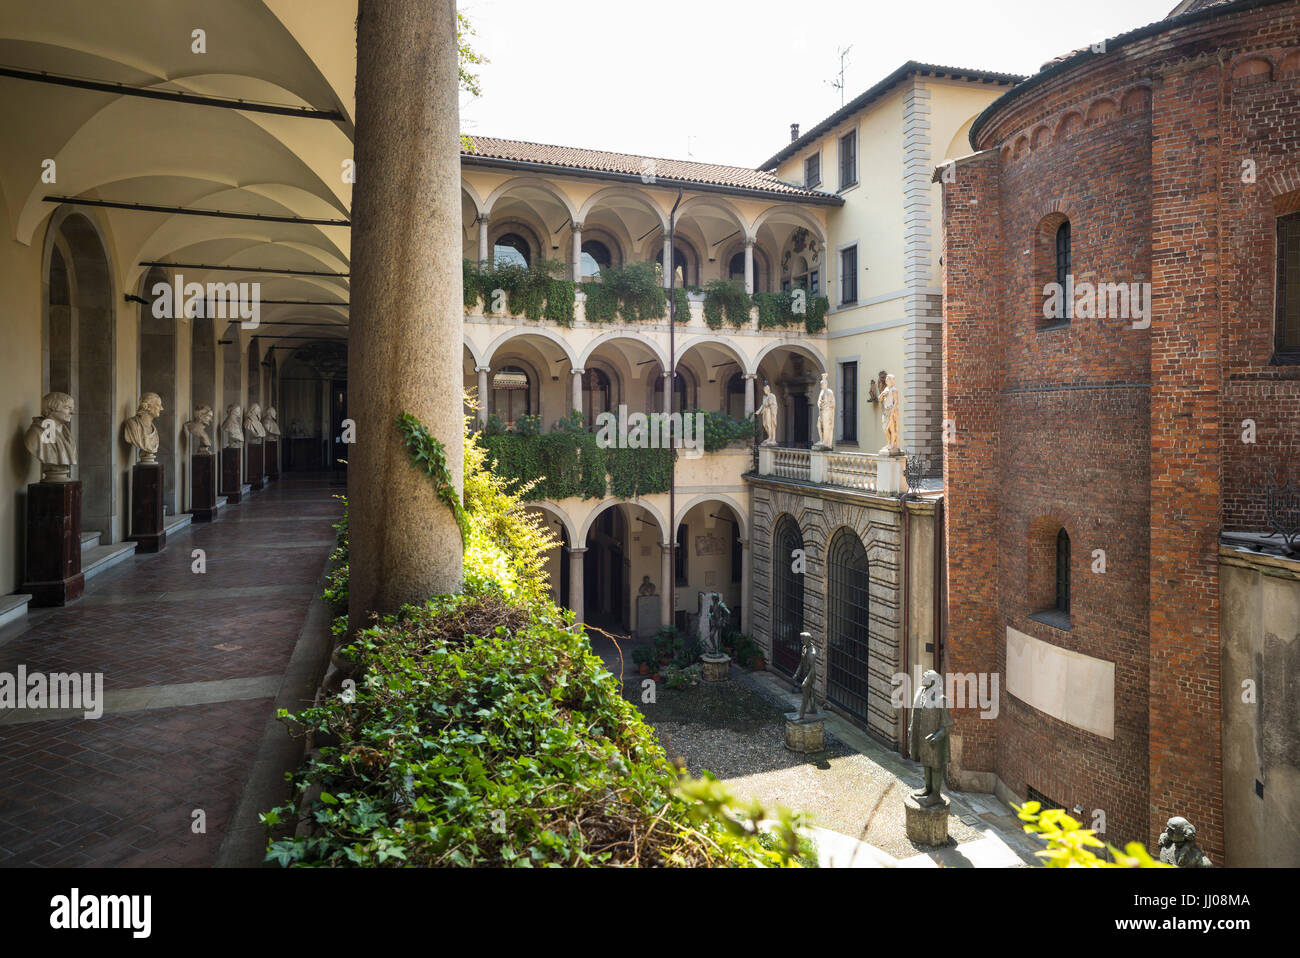 Milan. Italy. Inner courtyard of the Palazzo dell'Ambrosiana, home to the Pinacoteca Ambrosiana and Biblioteca Ambrosiana. Stock Photo